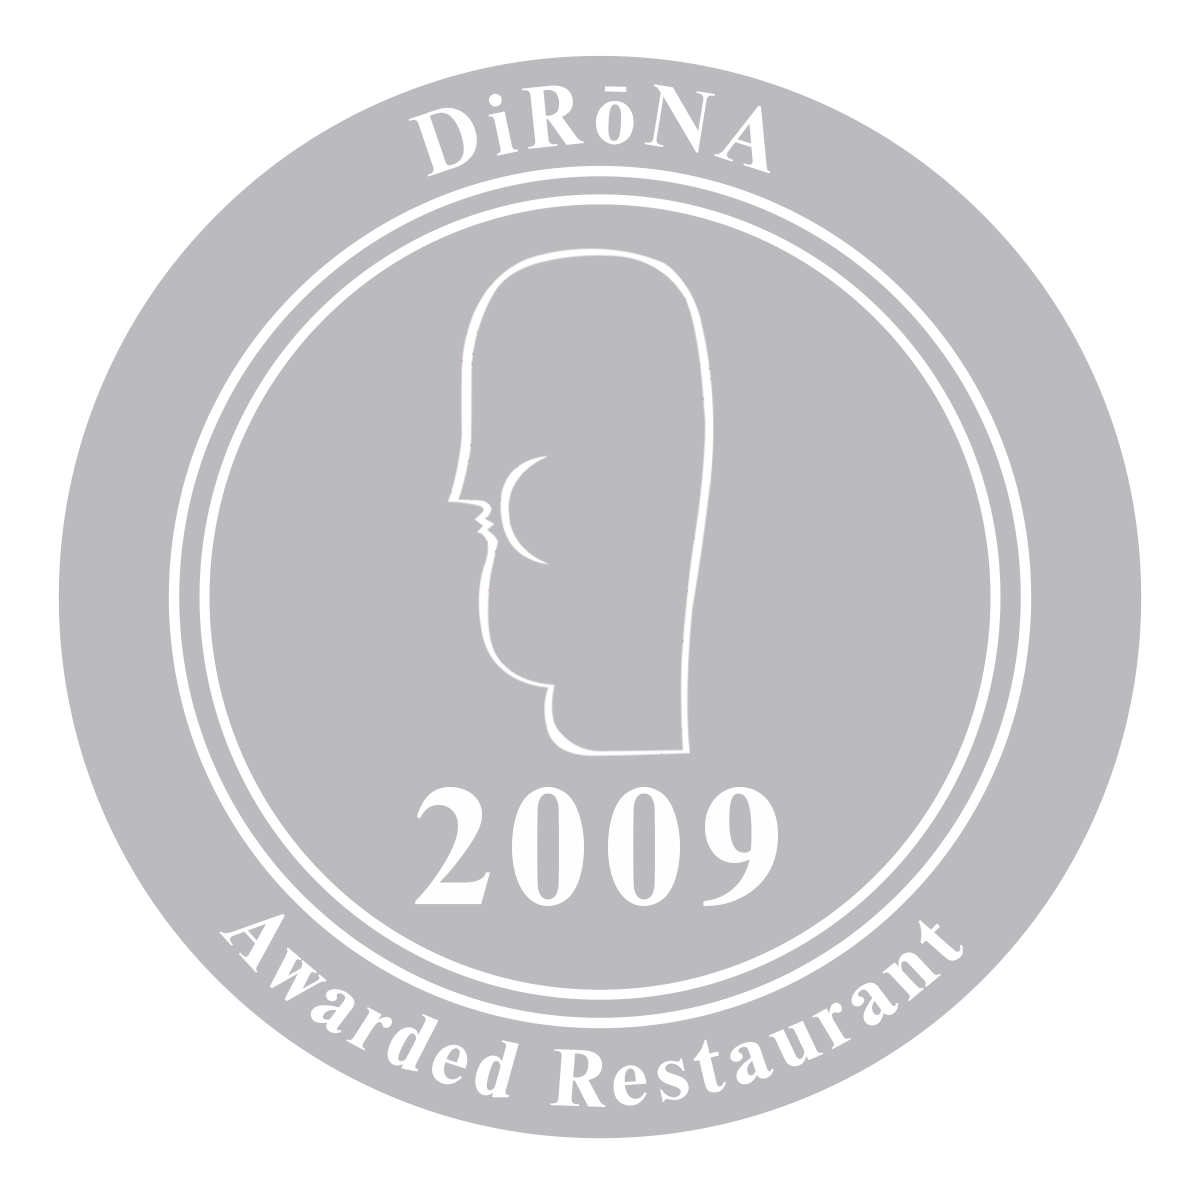 DiRoNA 2009 Badge-grey-editable